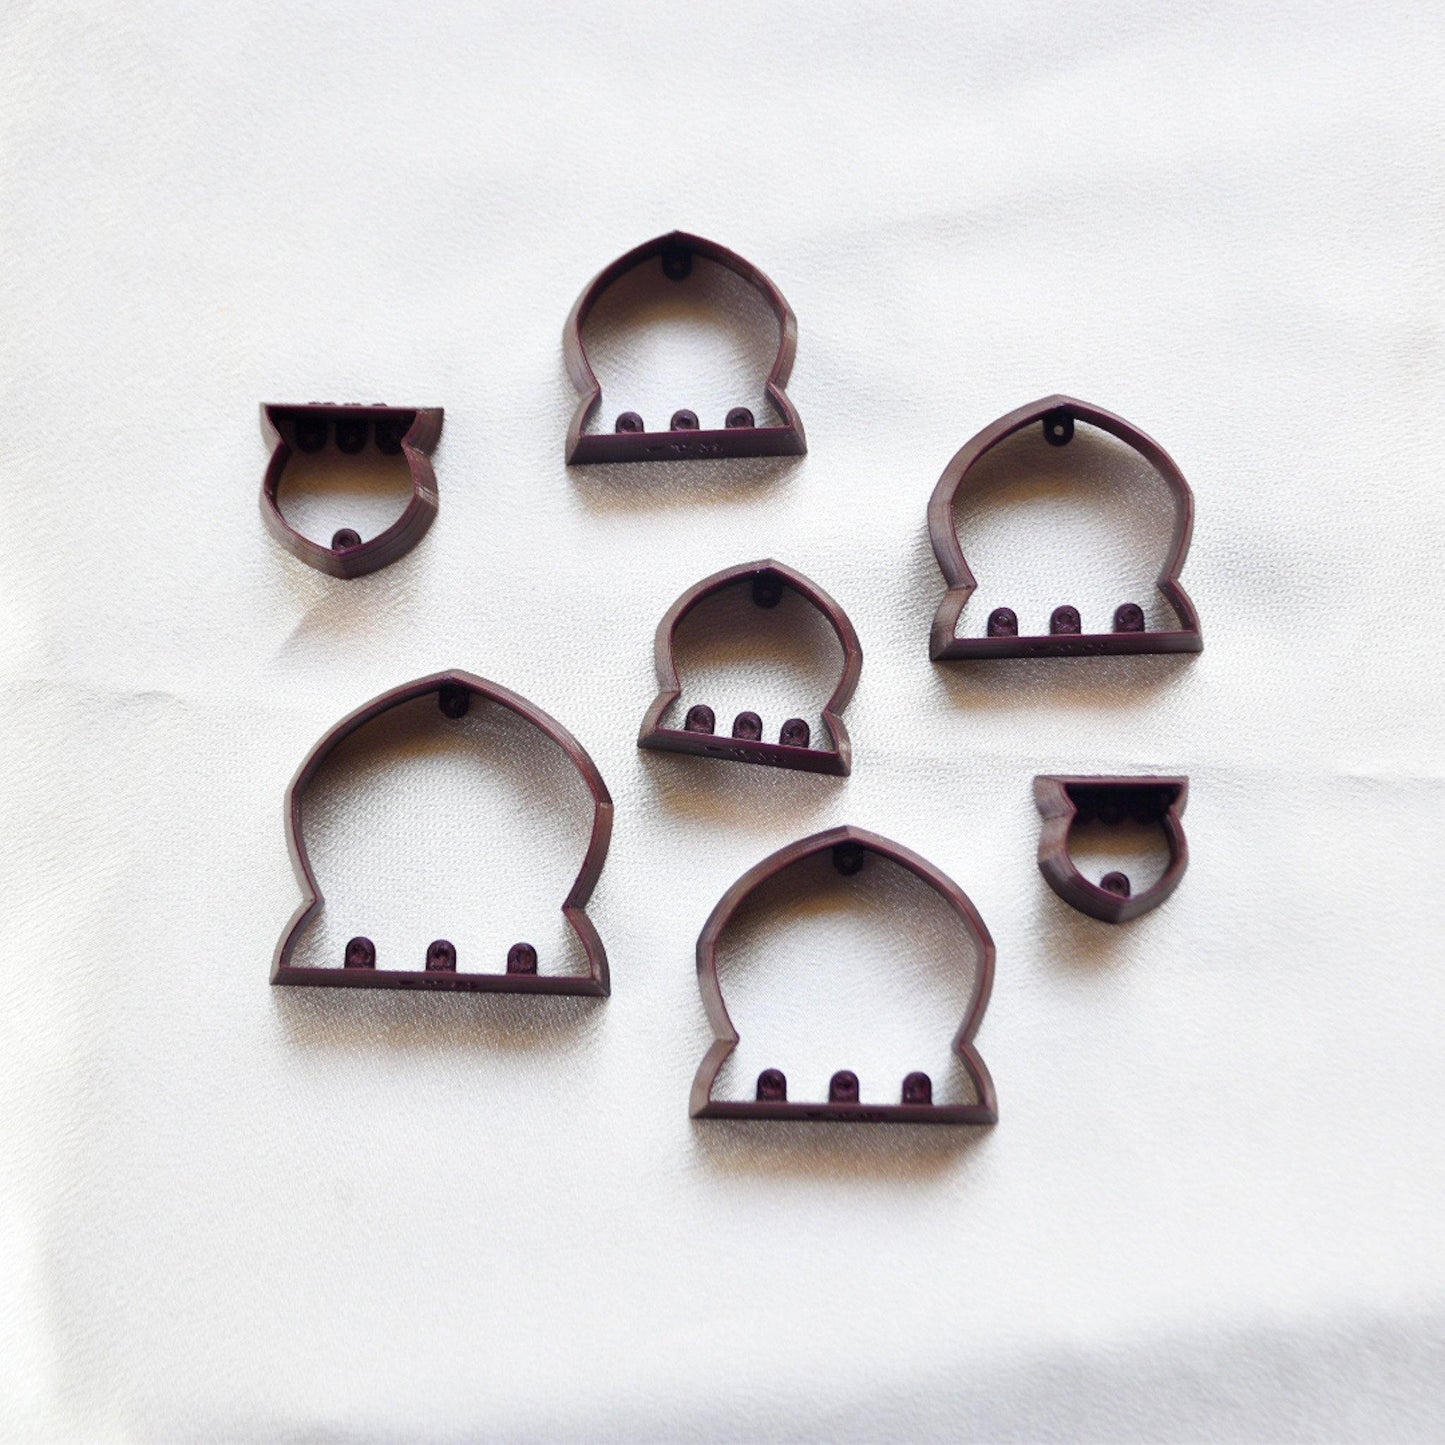 Mahal Cutters - handmade earrings - handcrafted earrings - Saint Petersburg, Florida